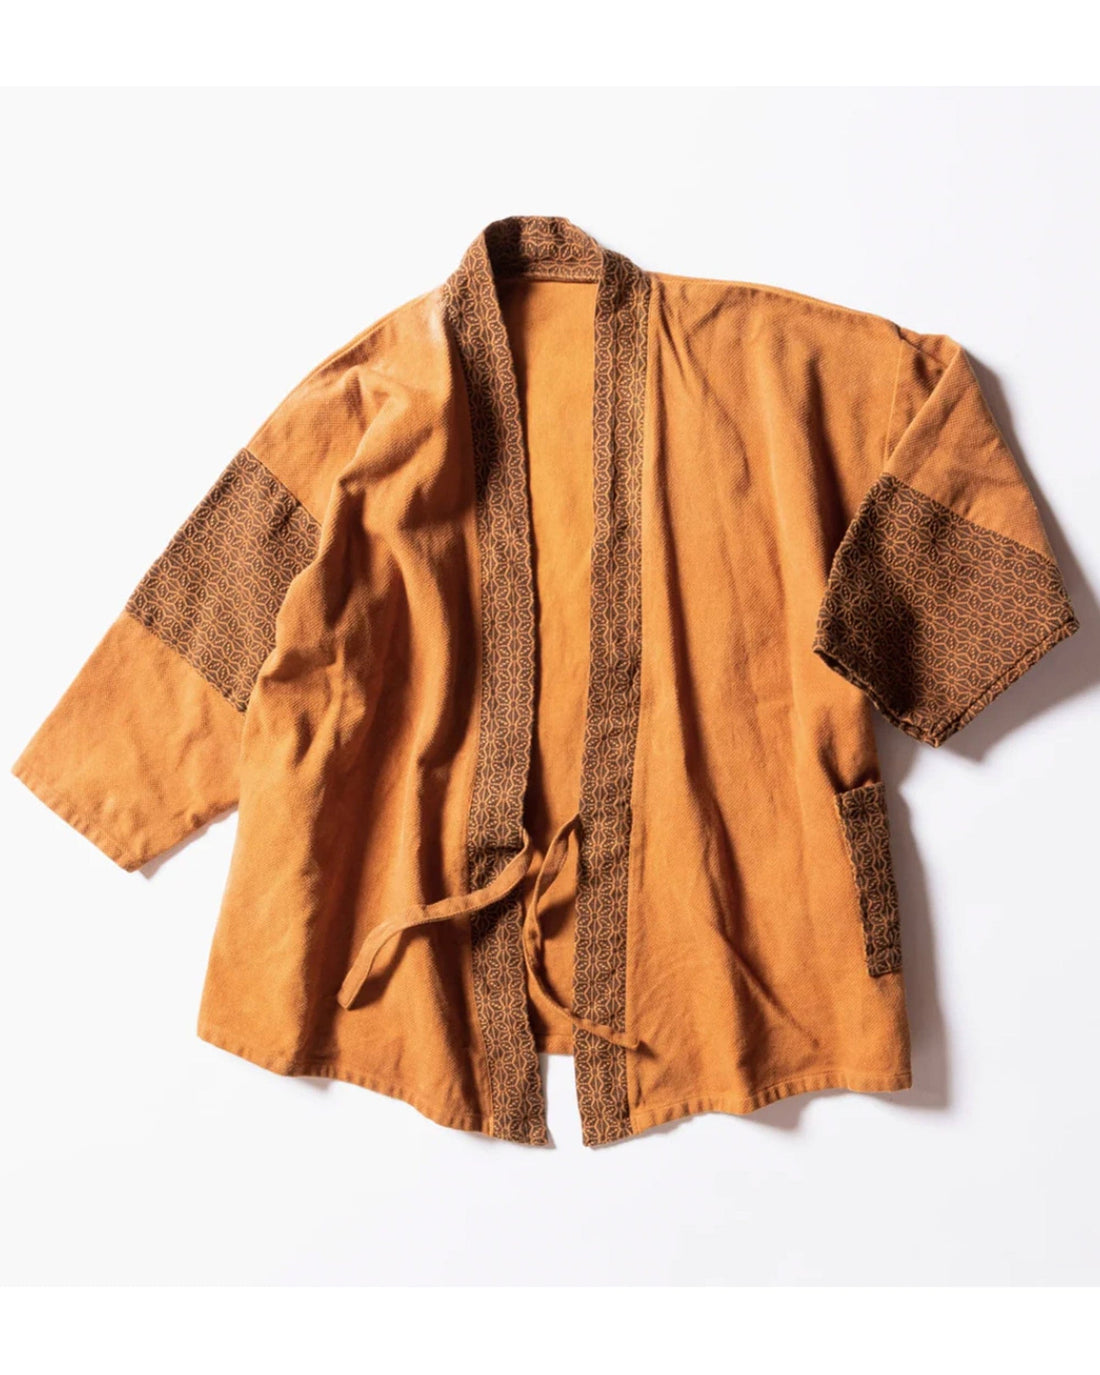 Mastercraftsmanship Patchwork Samue Jacket (Kakishibu) Sashiko - Kimono style